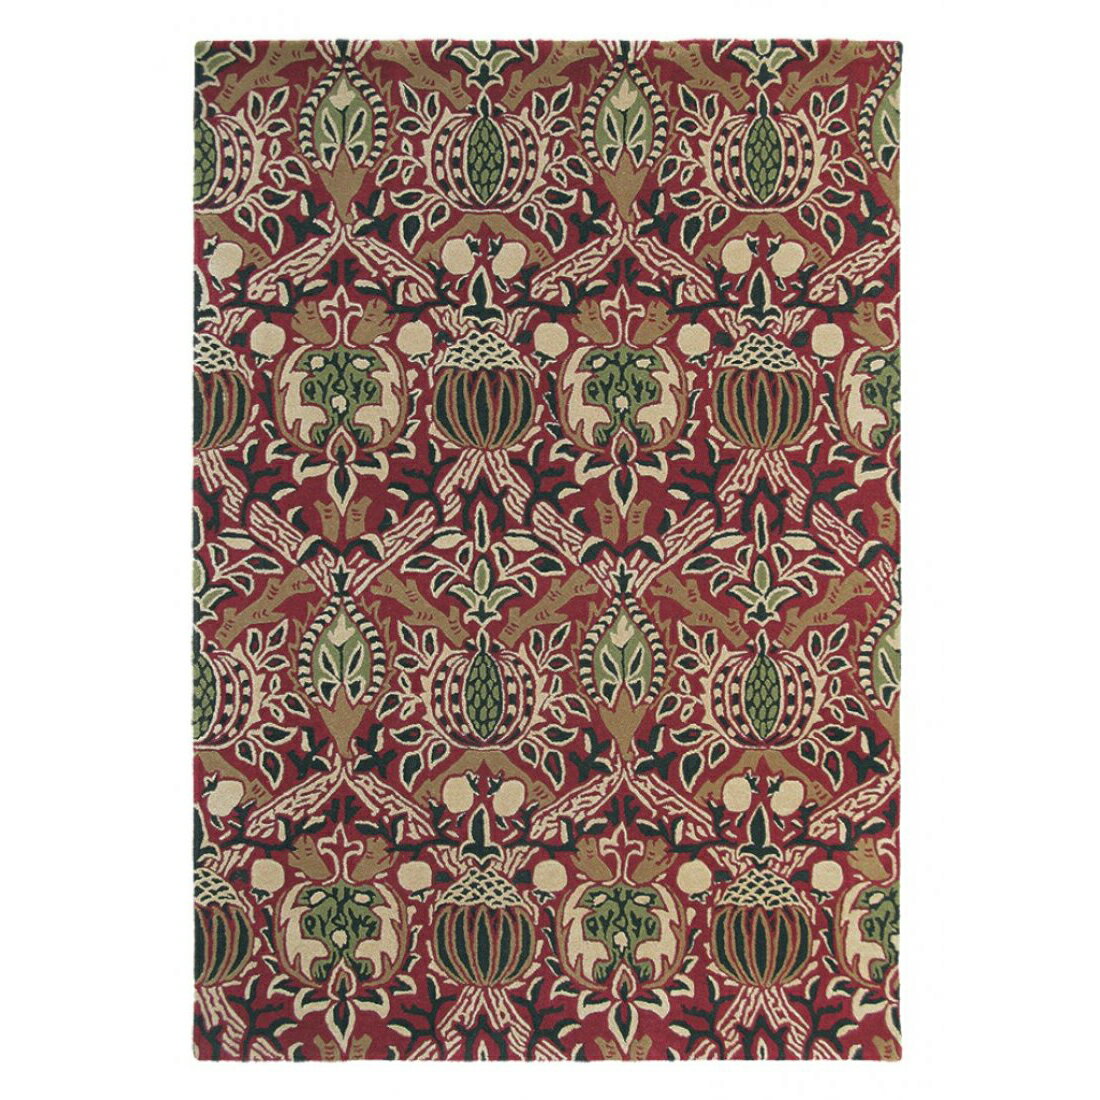 英國Morris&Co羊毛地毯 GRANDA 27600  古典圖騰 經典優雅